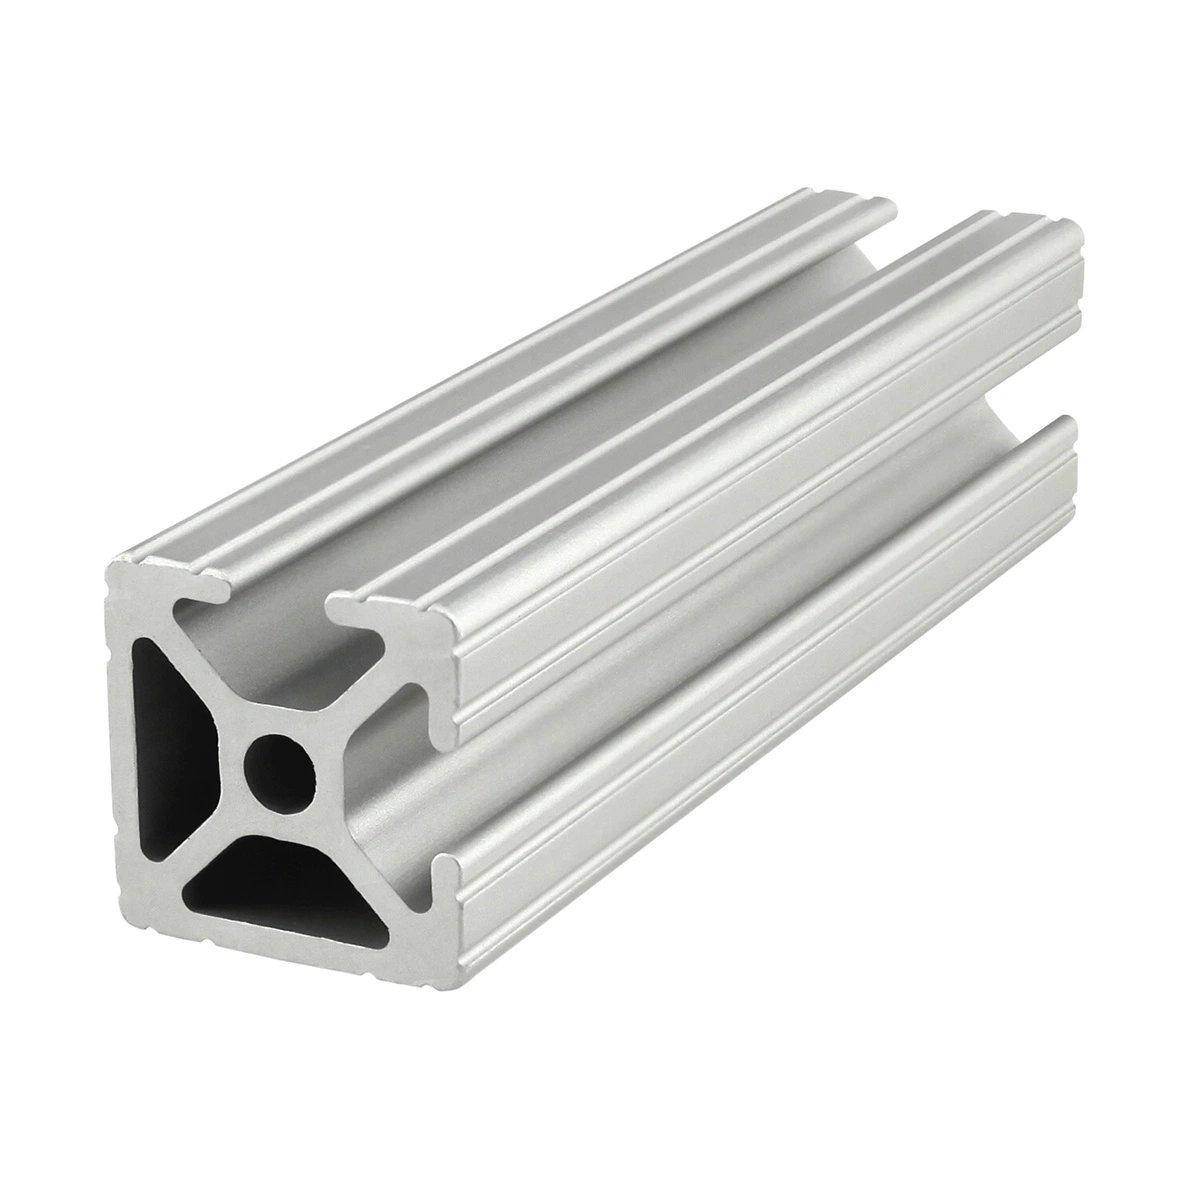 Diseño de extrusión de aluminio Marco para la personalización de estante